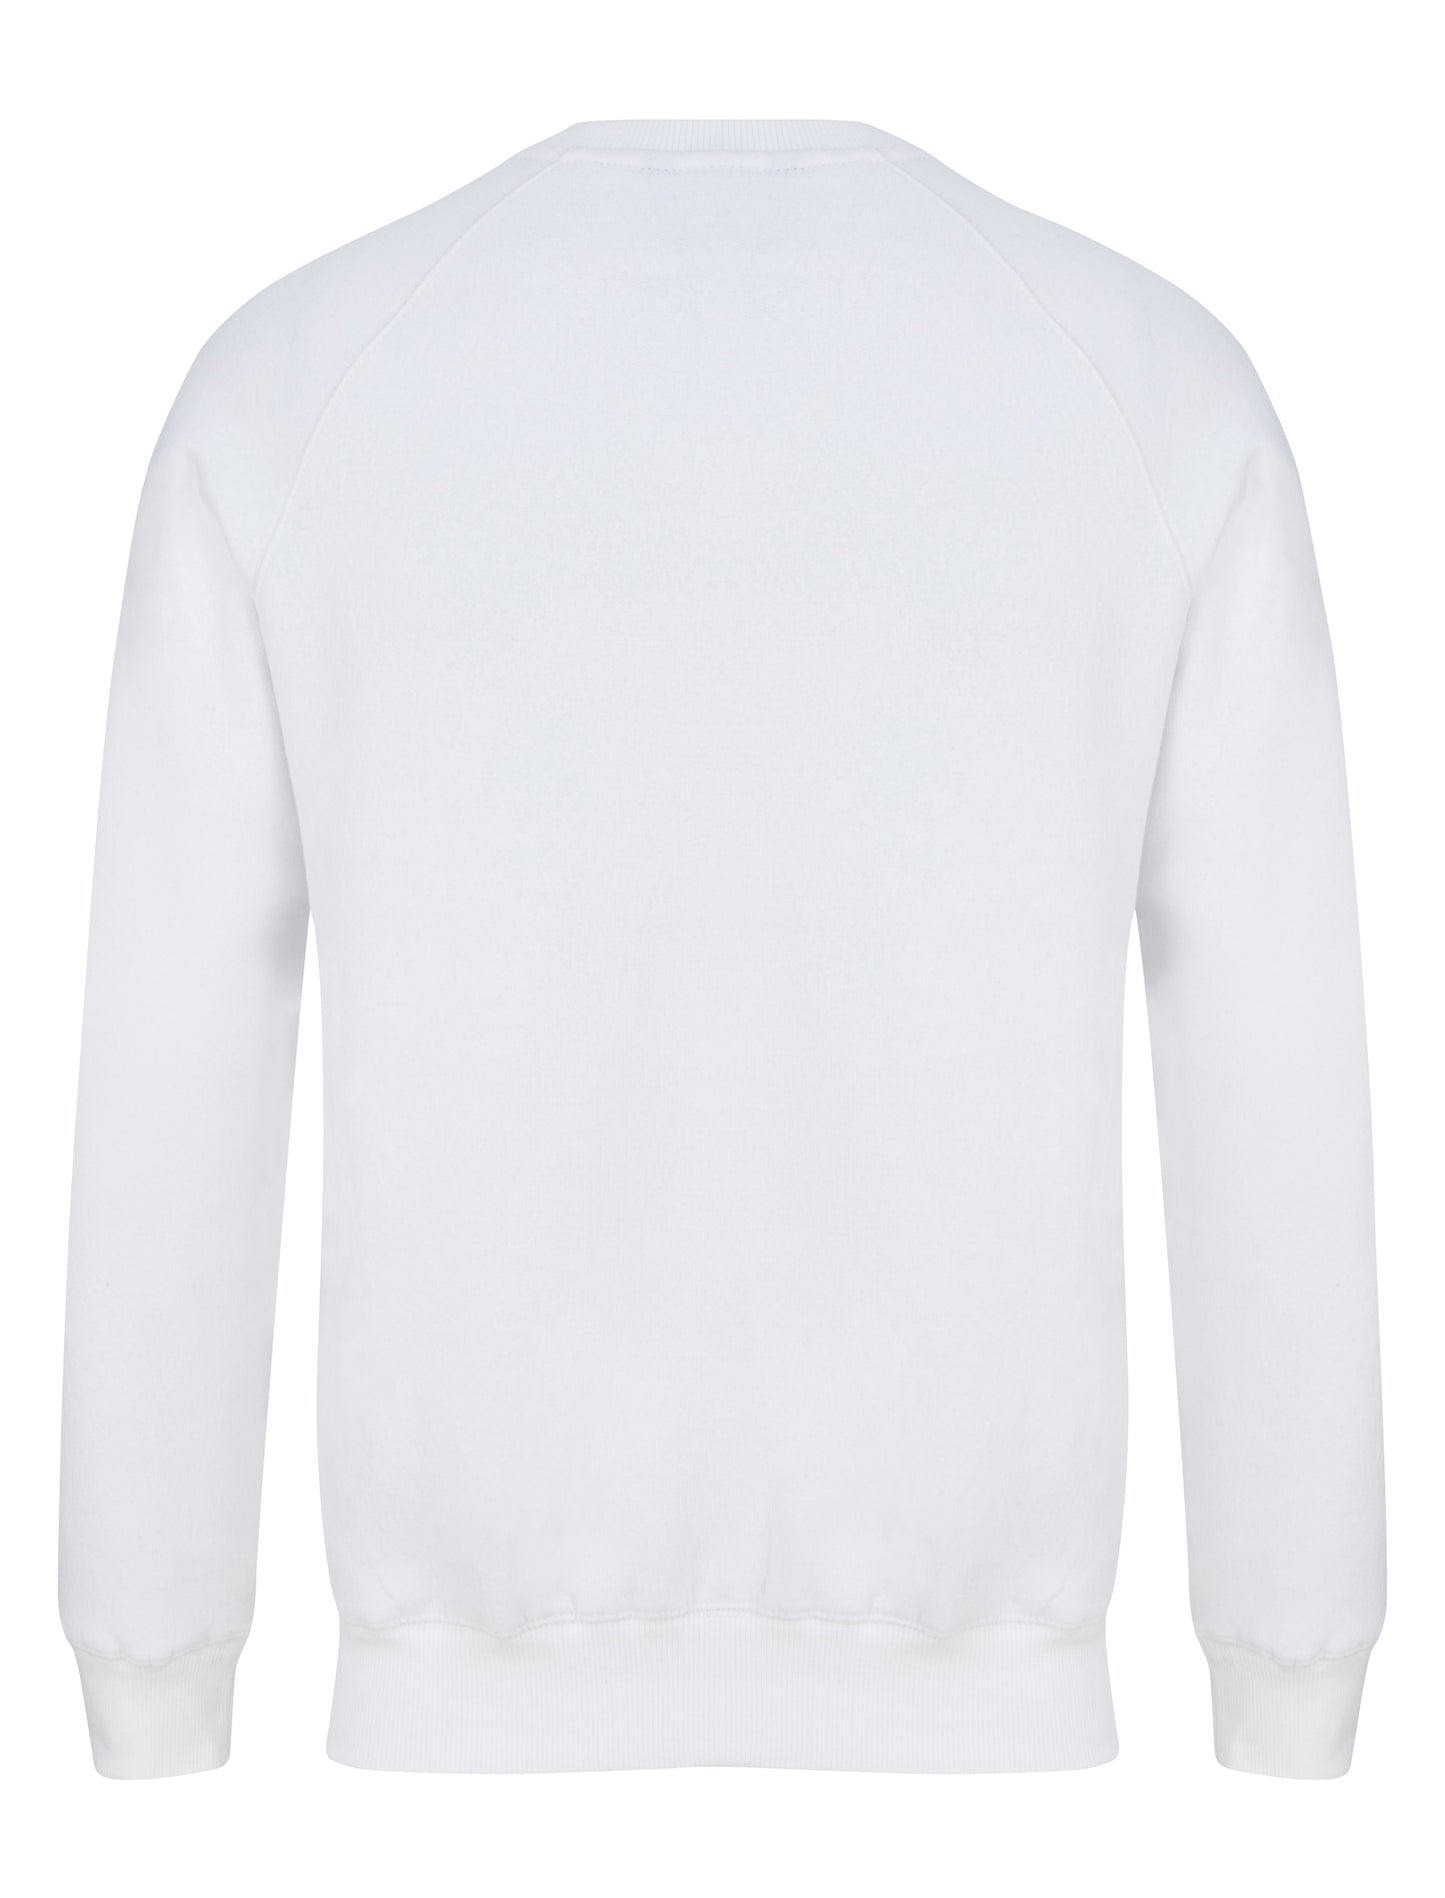 Sweatshirt white Back Yungnrich 